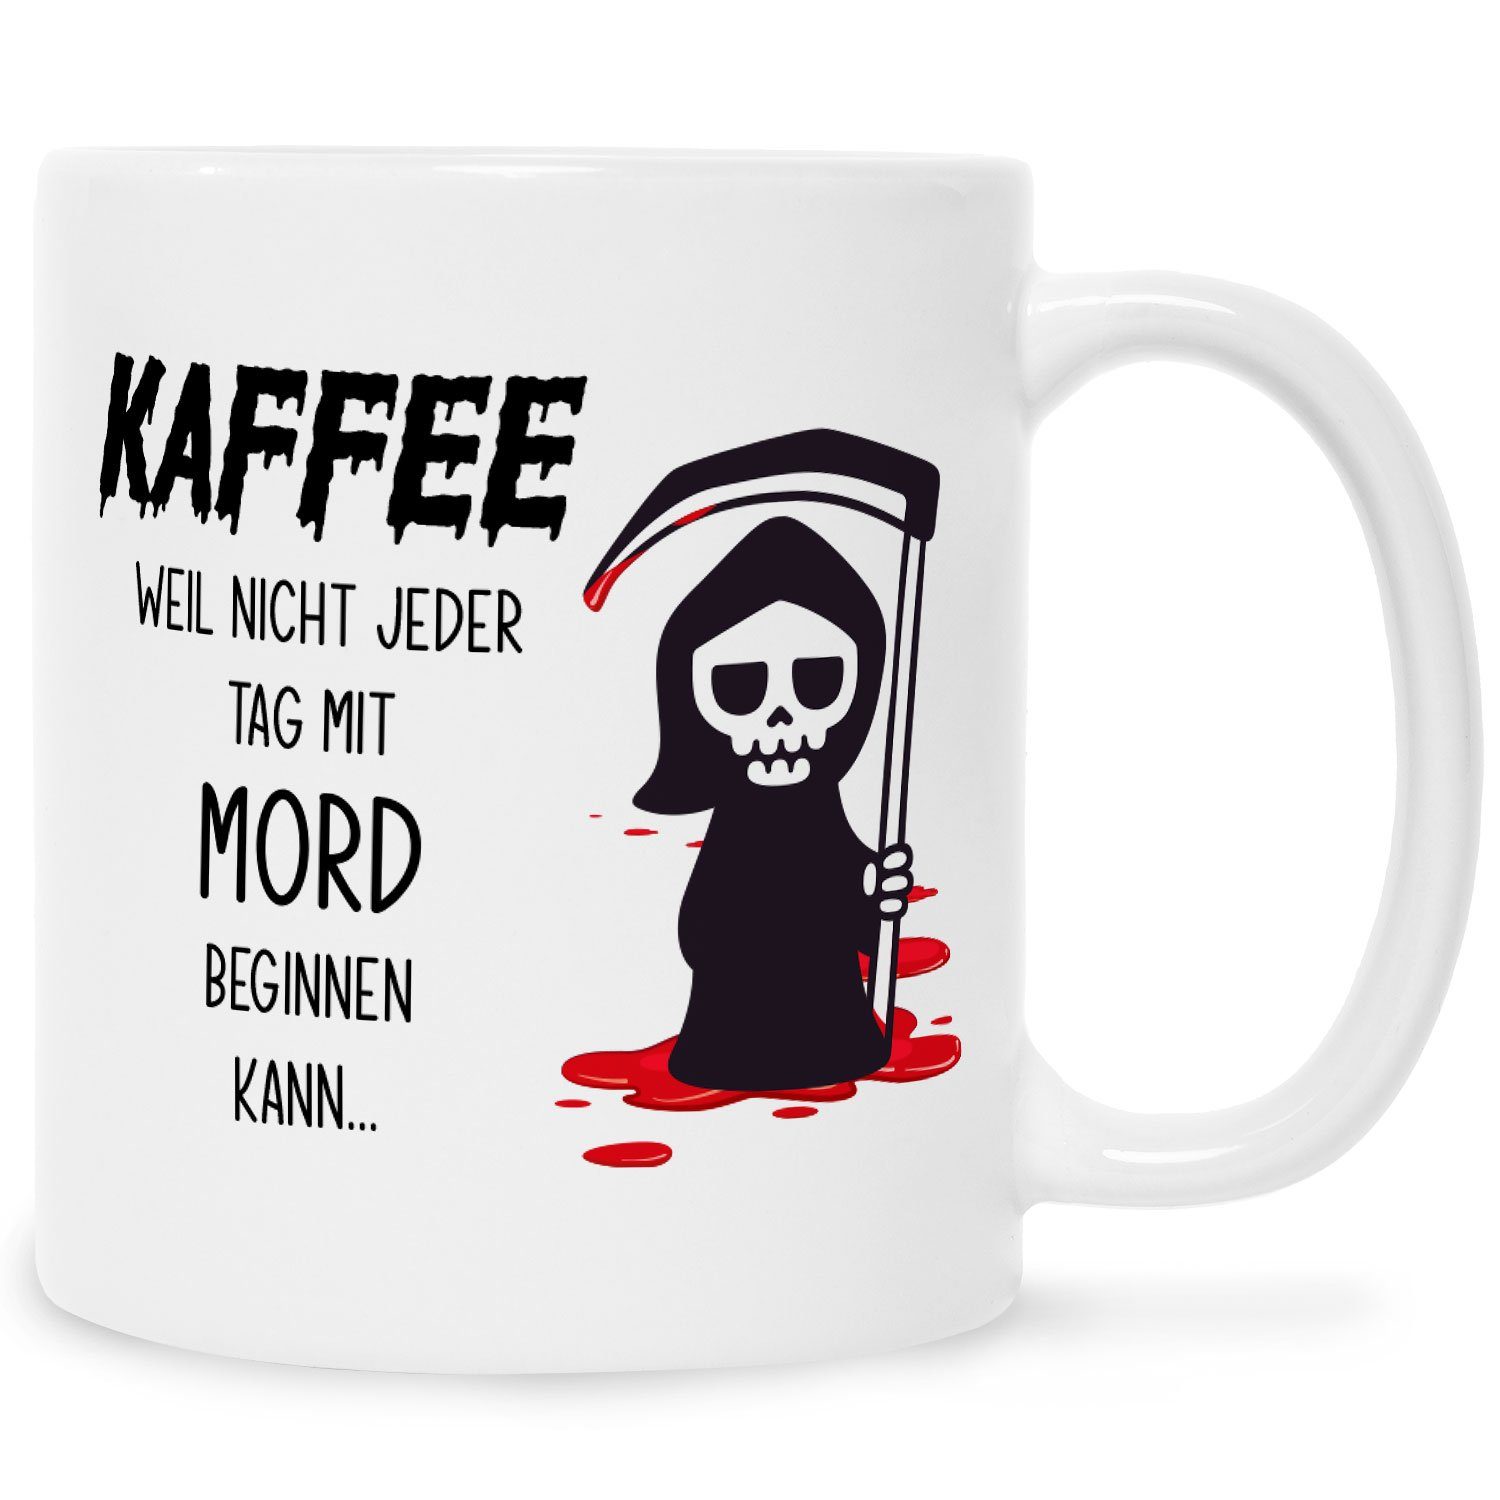 GRAVURZEILE Tasse Bedruckte Tasse - Kaffee weil nicht jeder Tag mit Mord beginnen kann, Keramik, Lustiges Geschenk mit Sensenmann für Kollegen Arbeit Büro Weiß